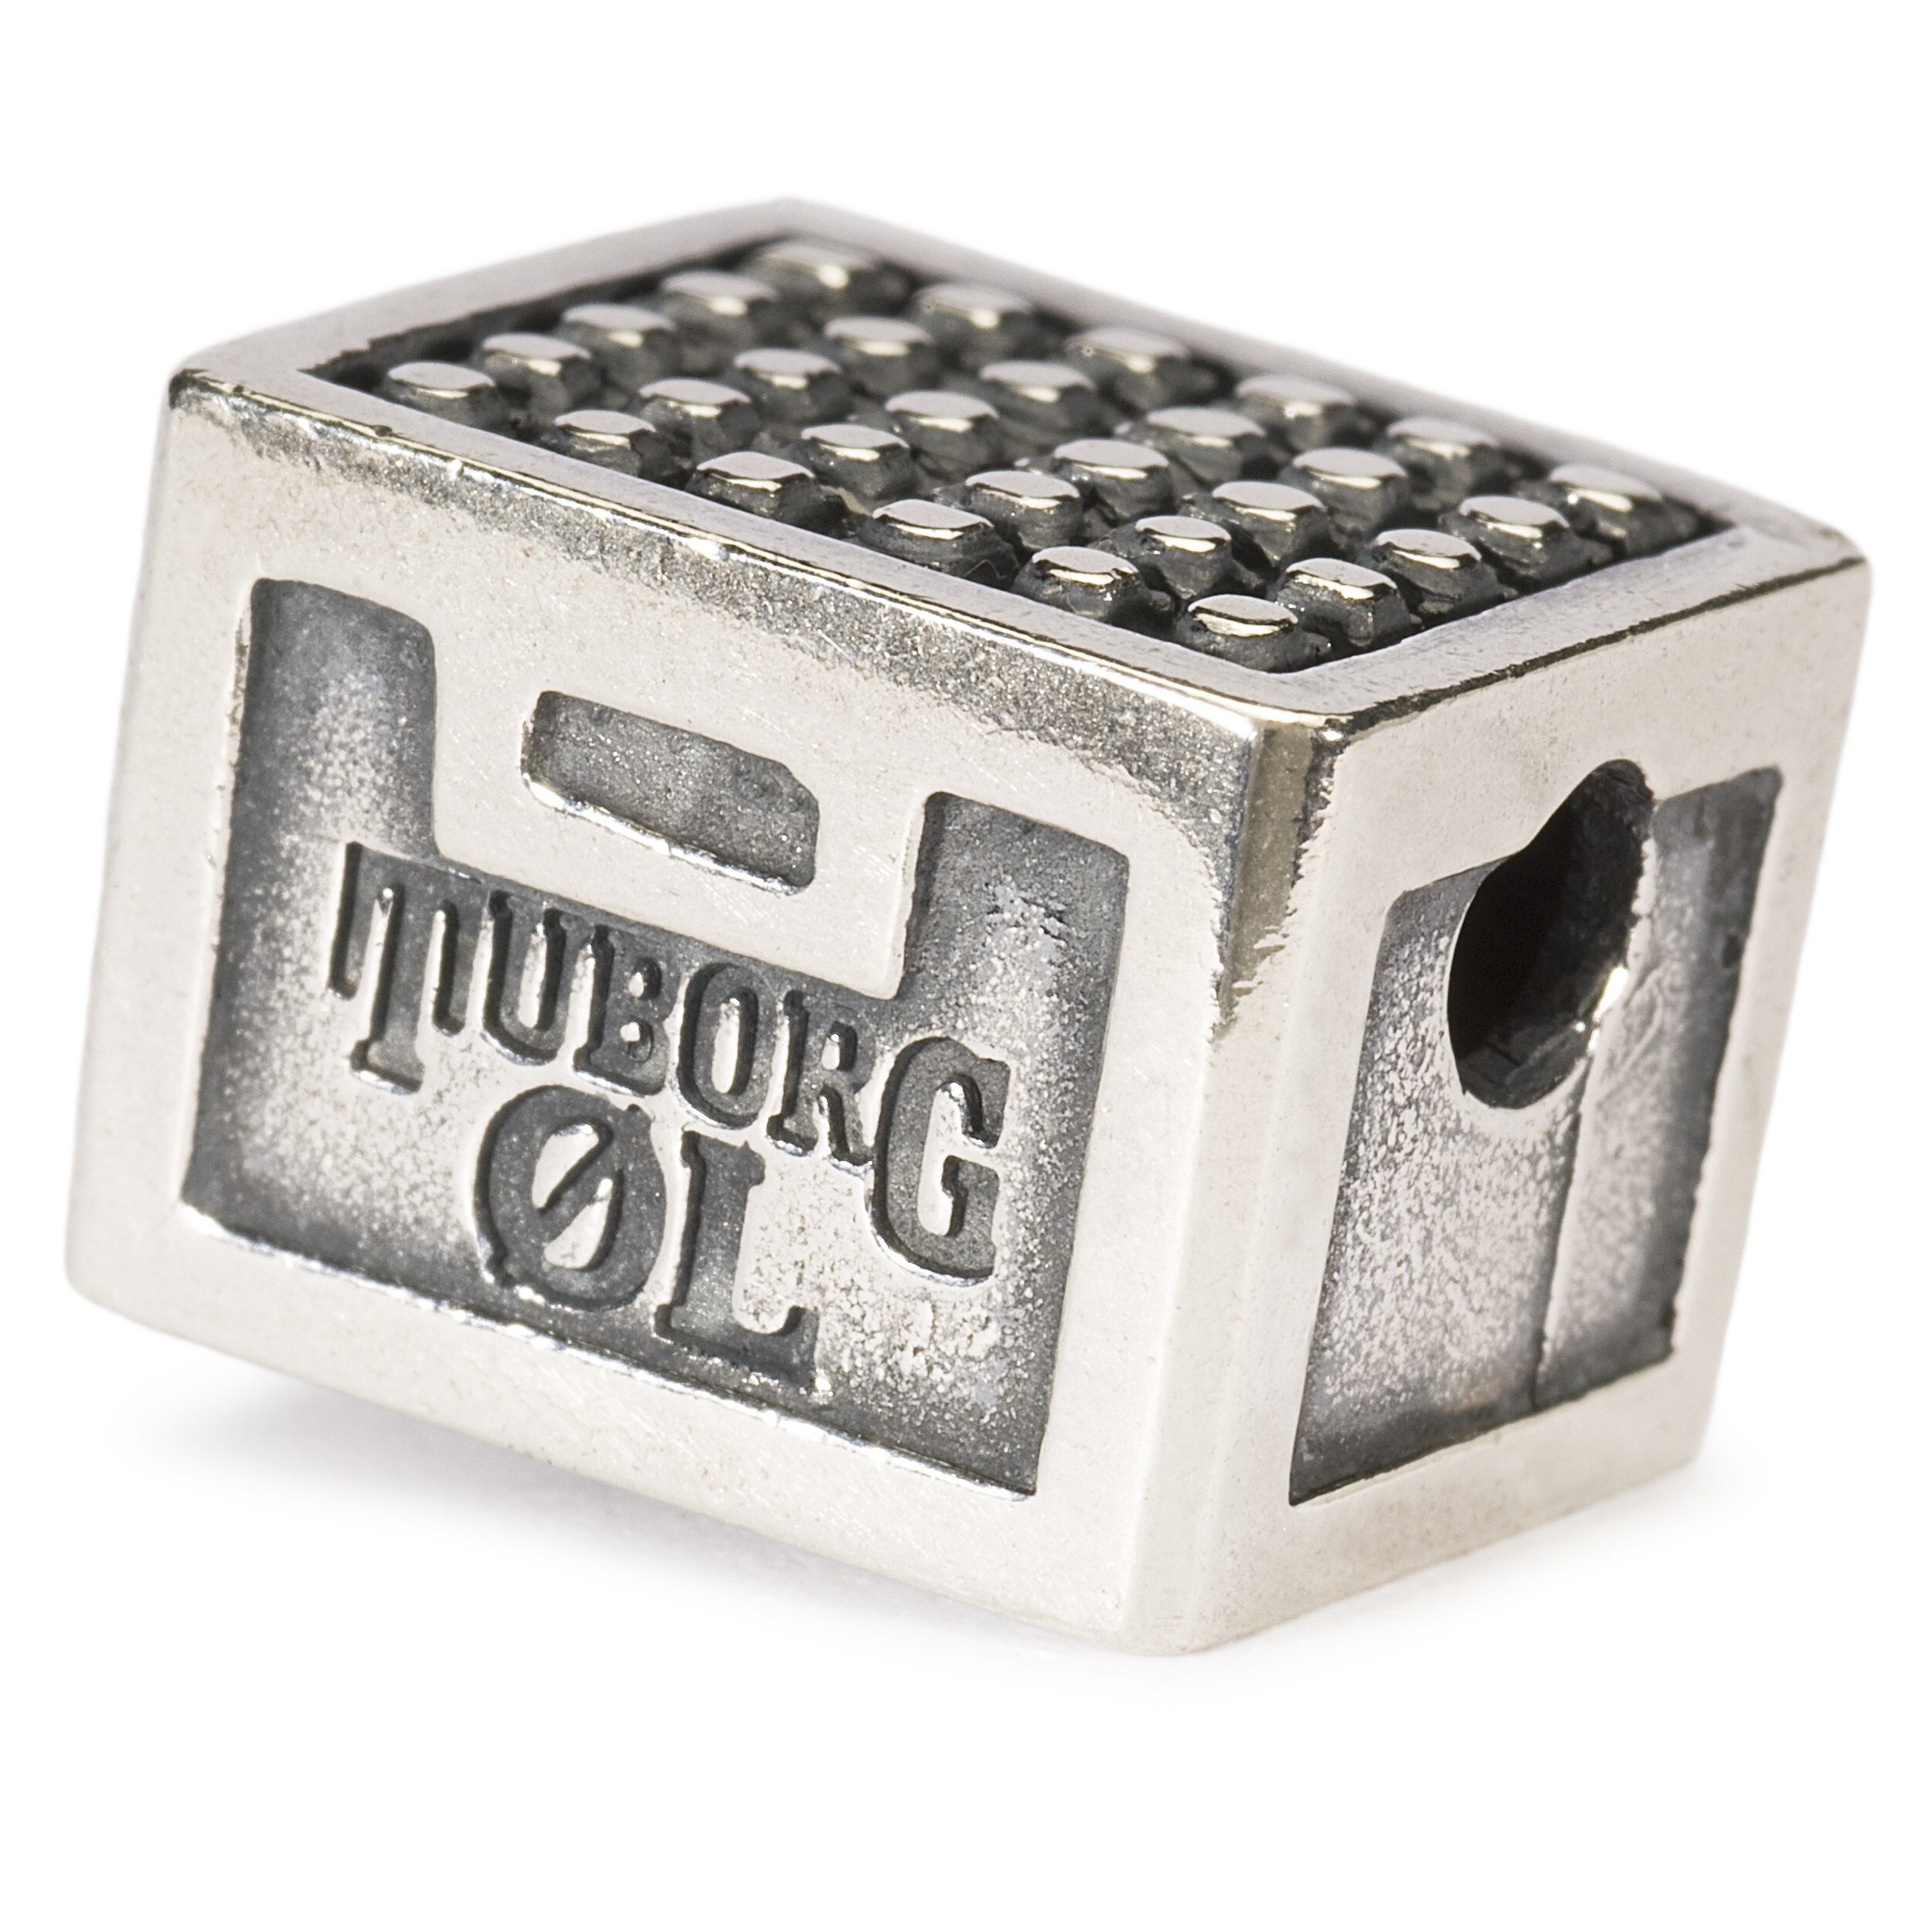 Crate, Tuborg